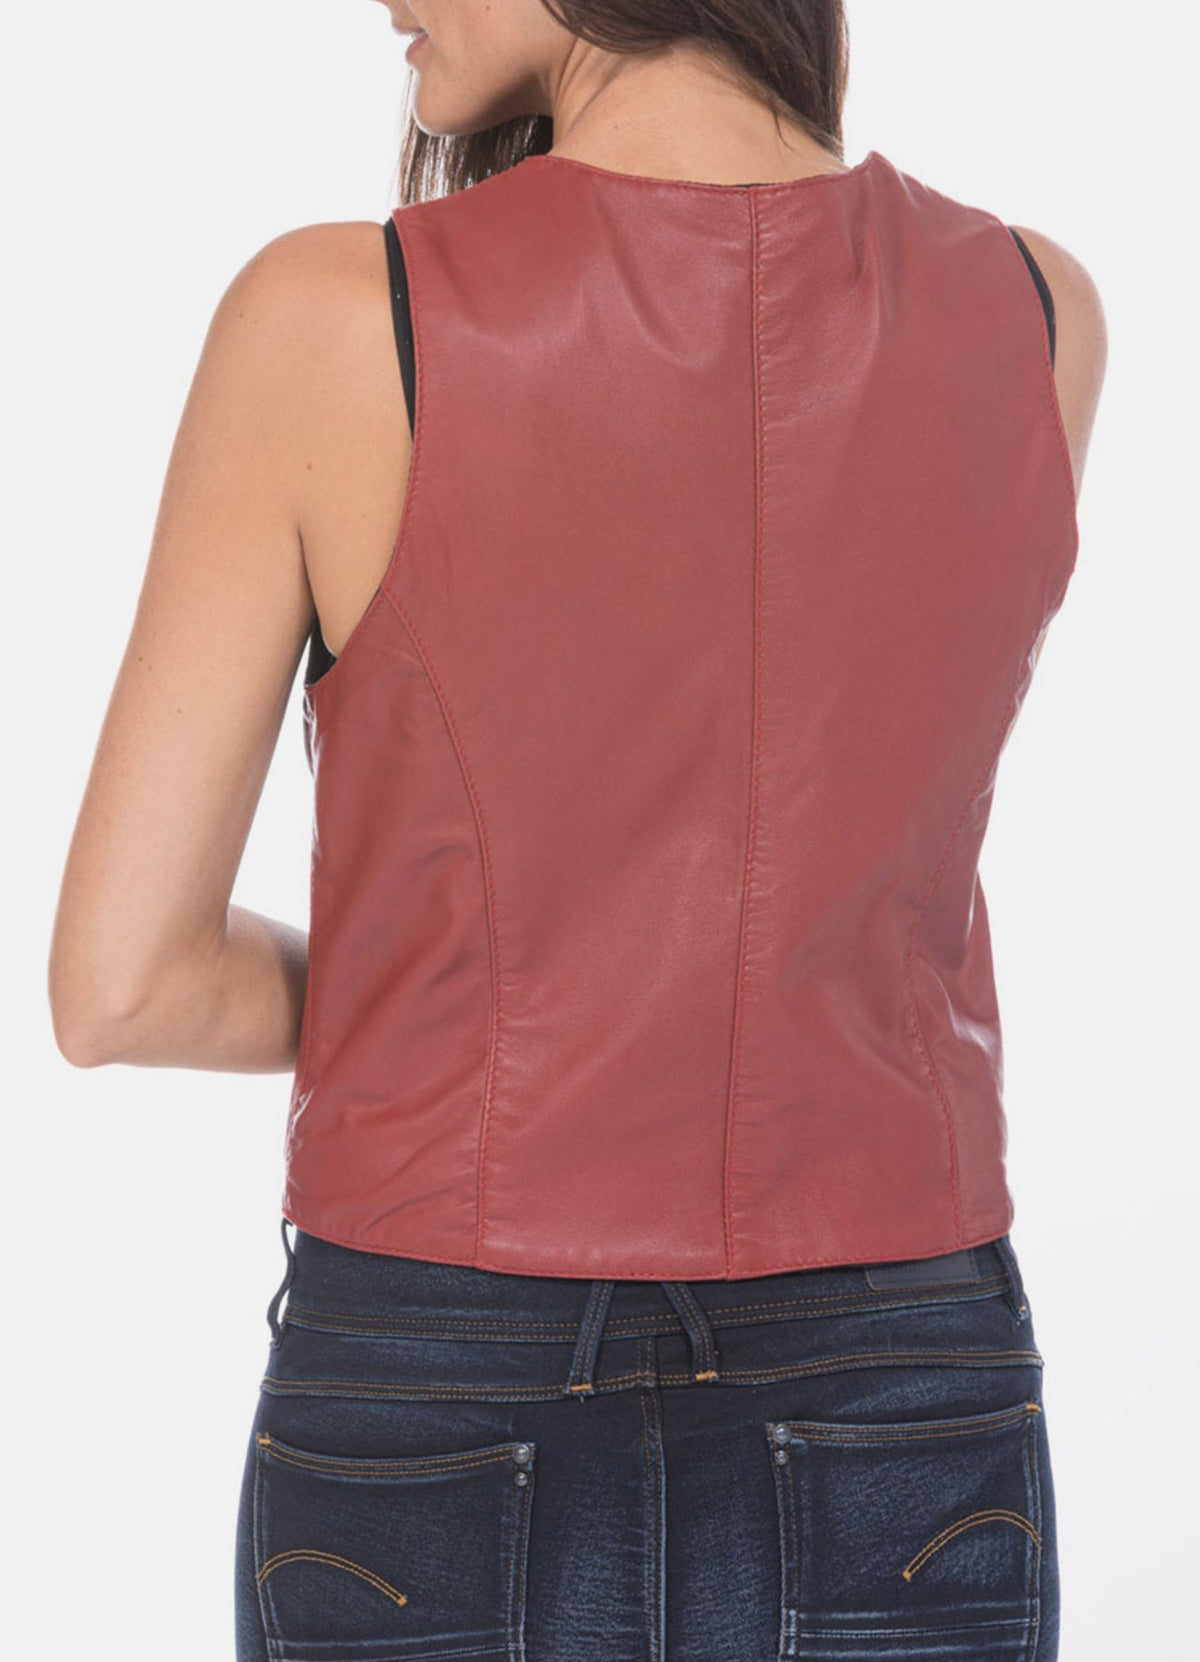 Womens Light Red Vintage Biker Leather Vest